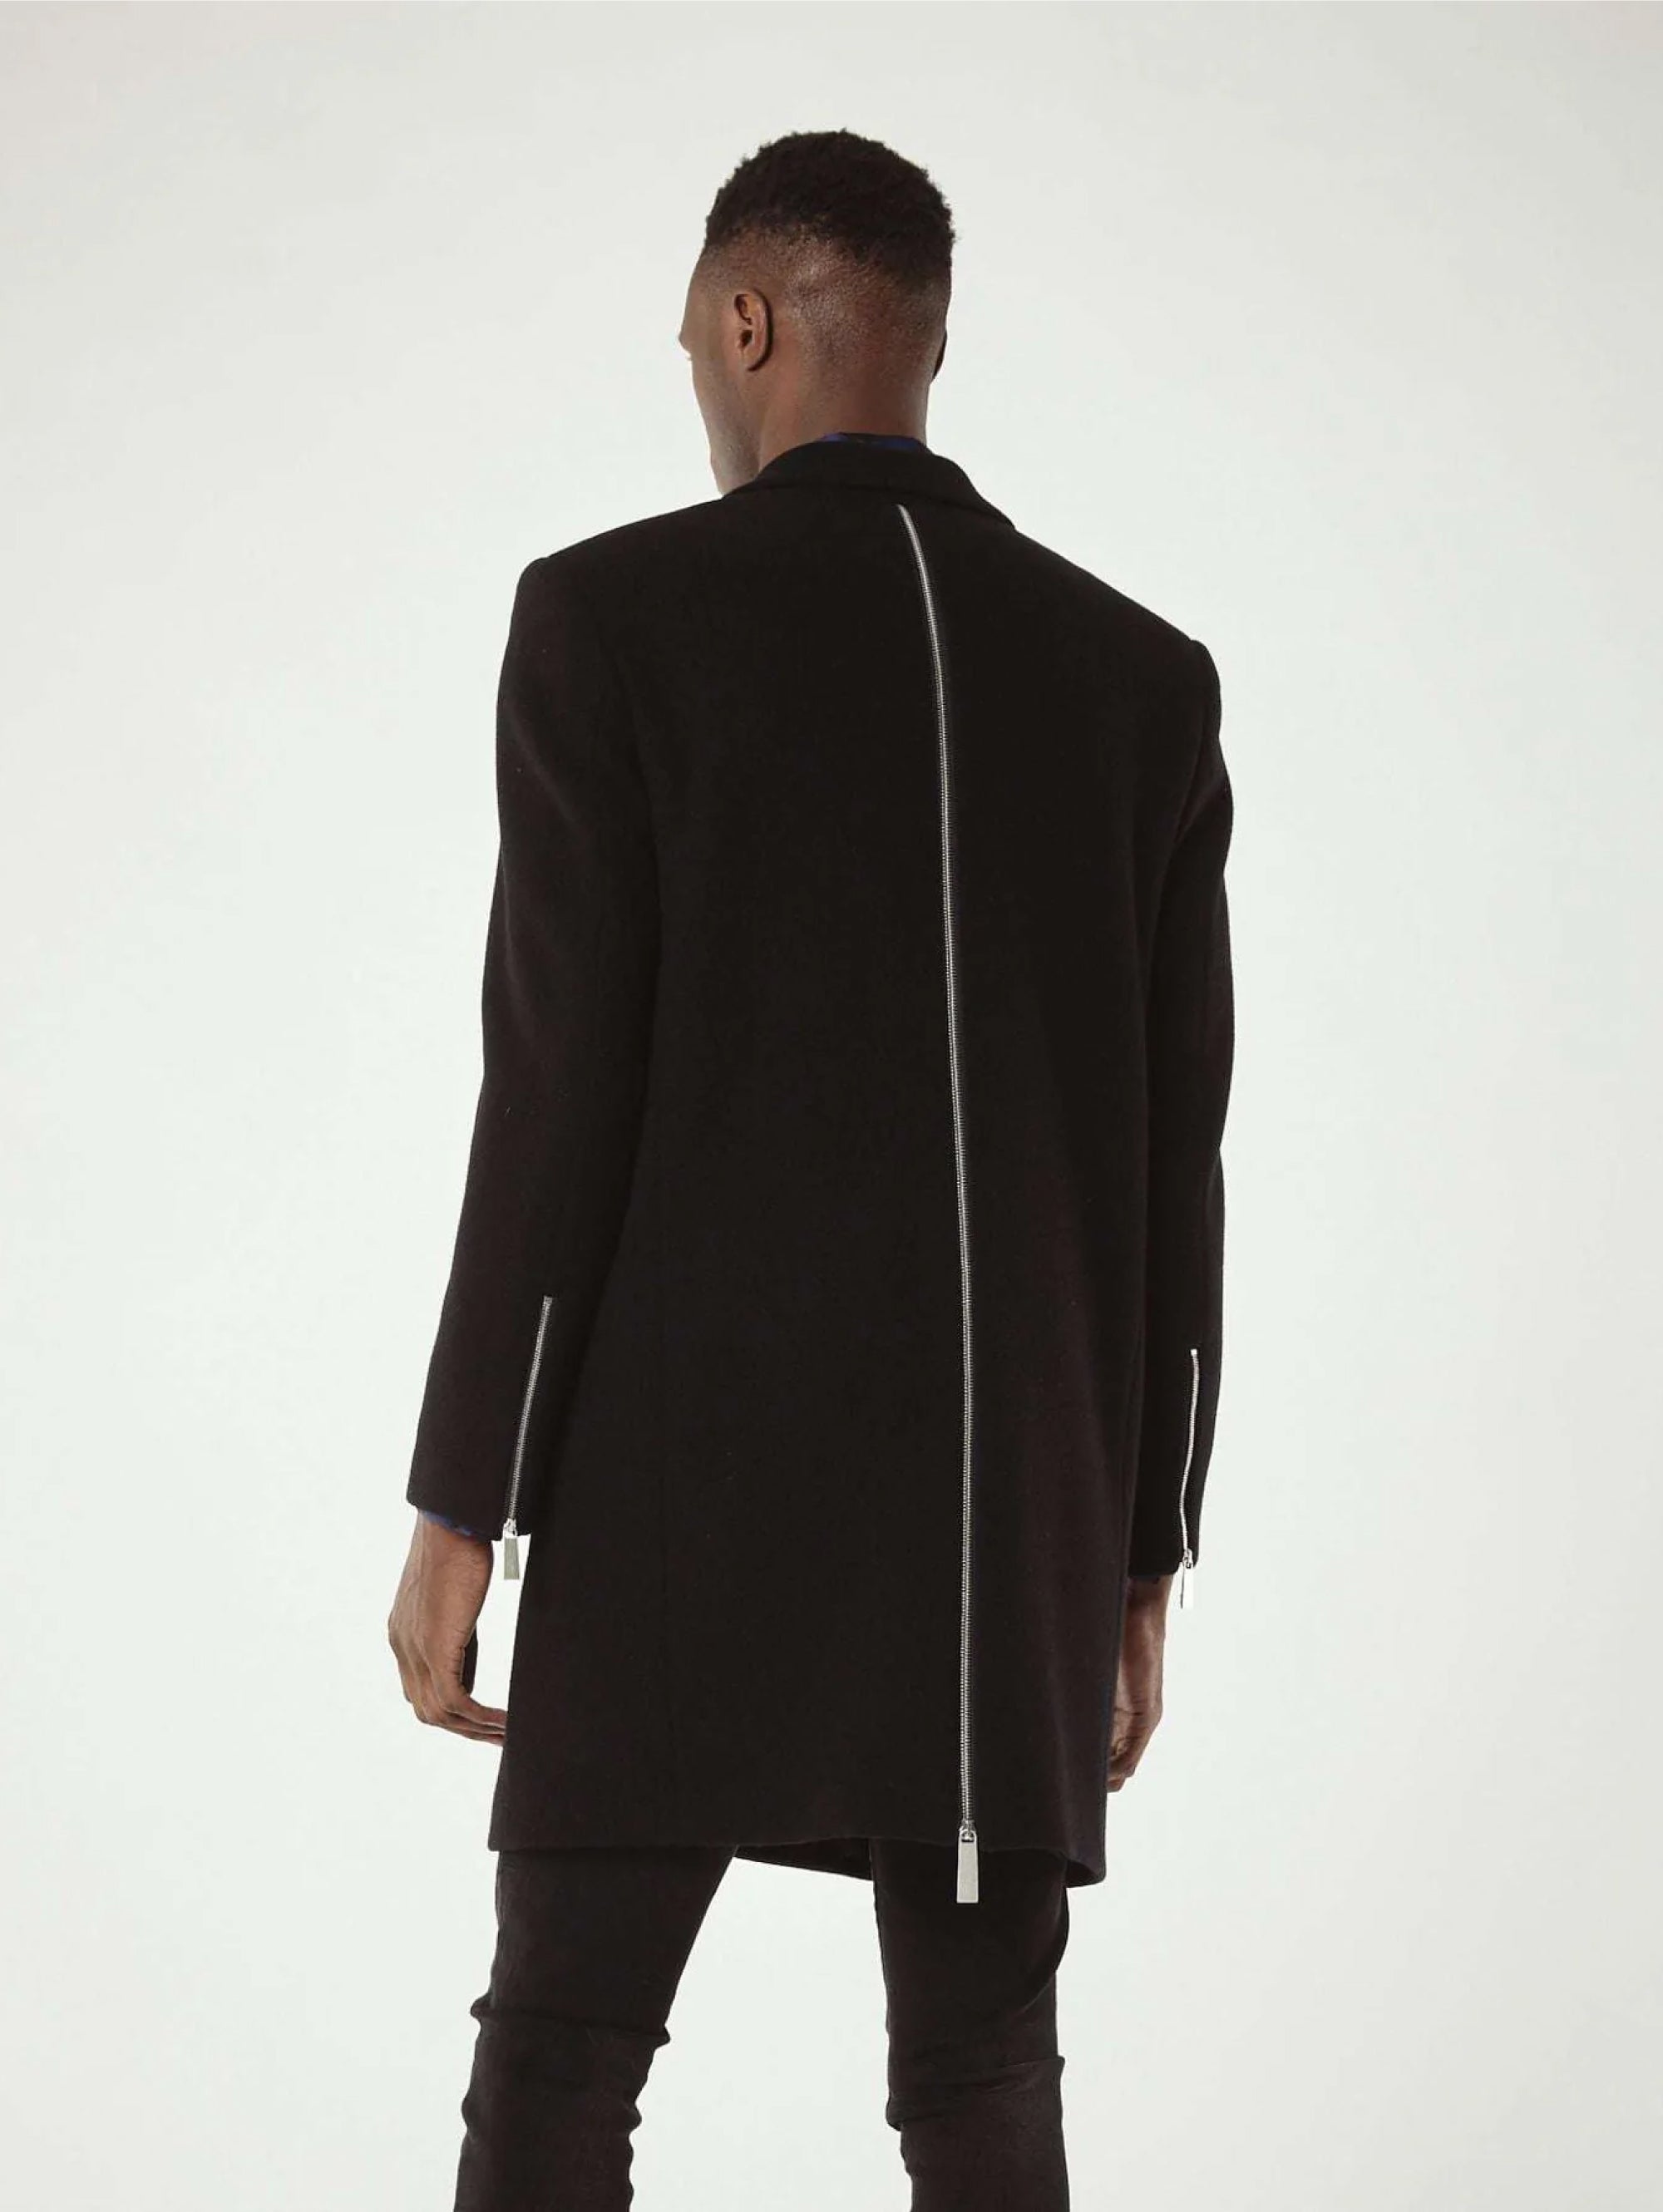 Schwarzer Mantel mit Reißverschluss hinten